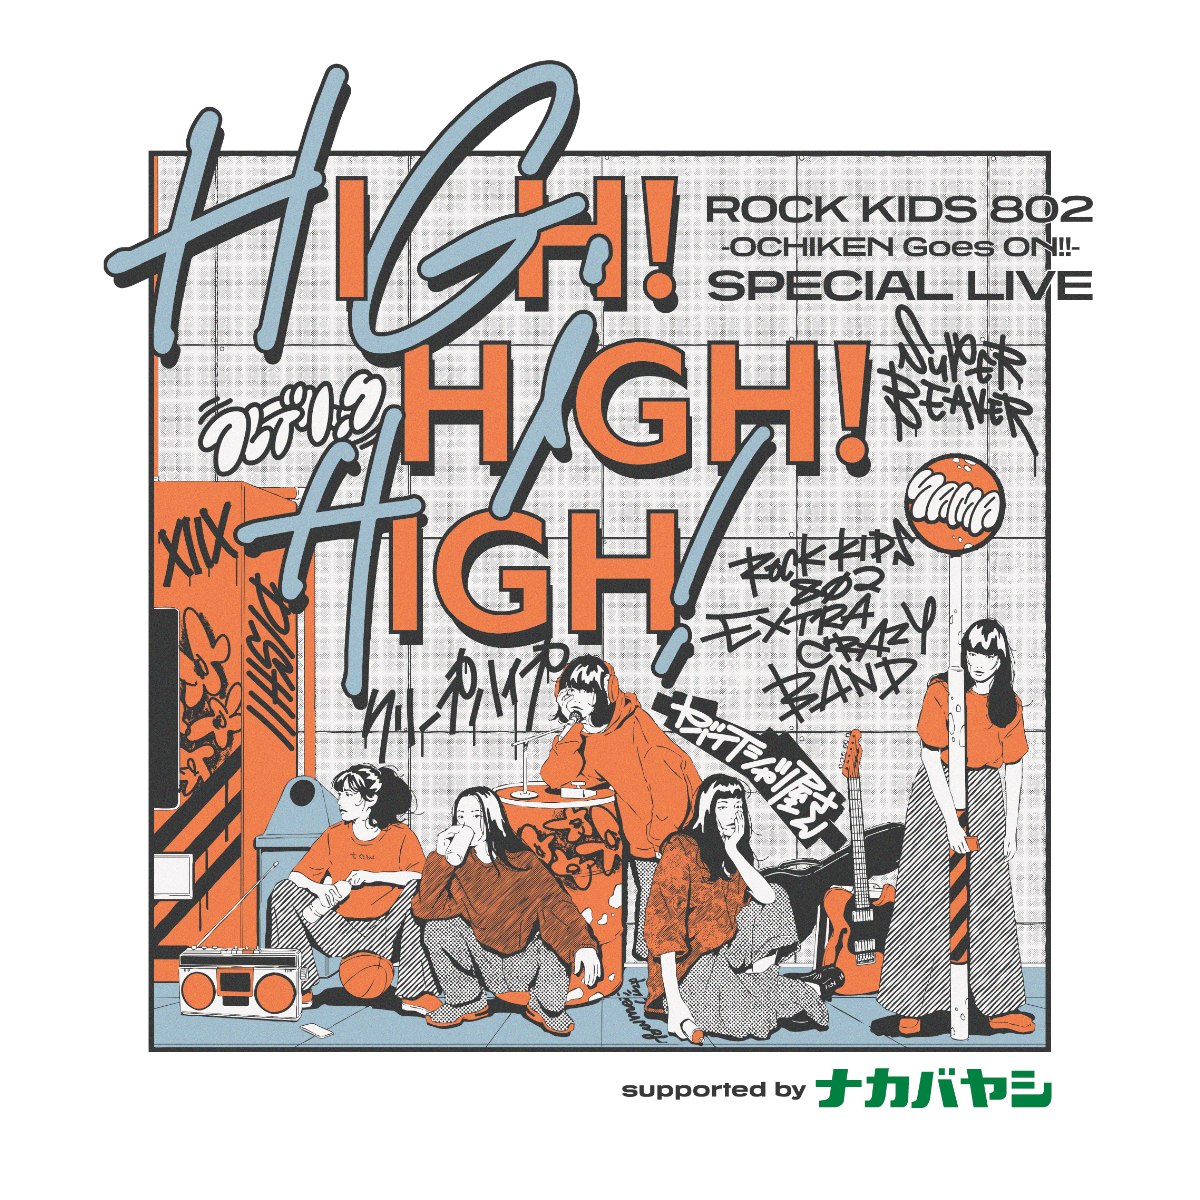 『ROCK KIDS 802 -OCHIKEN Goes ON!!- SPECIAL LIVE HIGH!HIGH!HIGH!』フライヤー